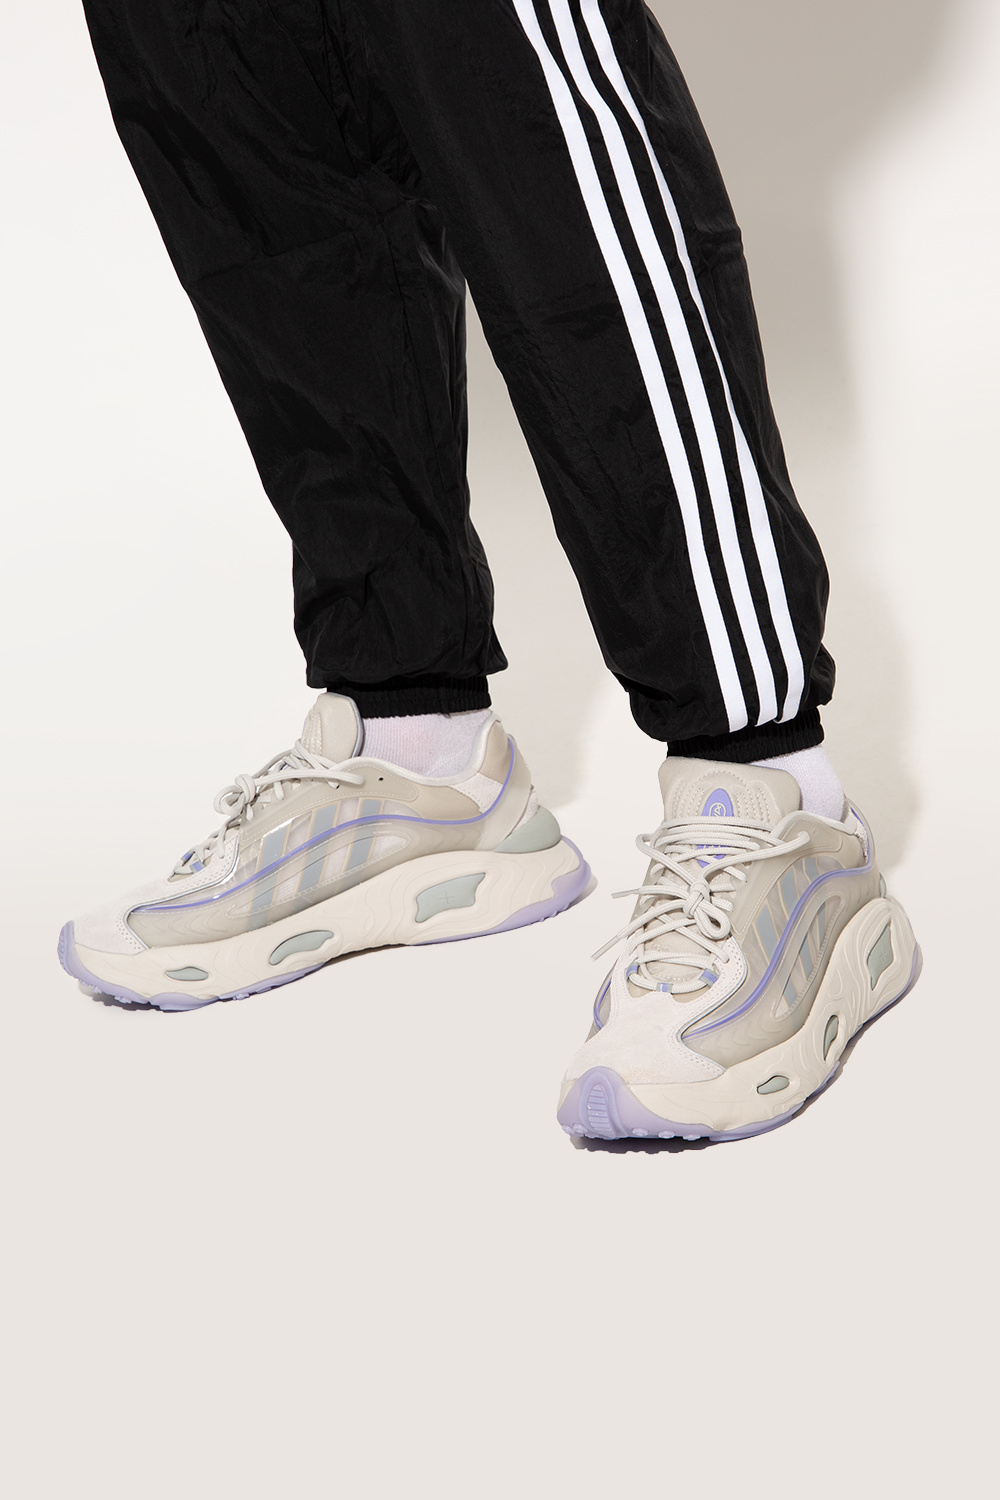 adidas made Originals ‘Oznova’ sneakers